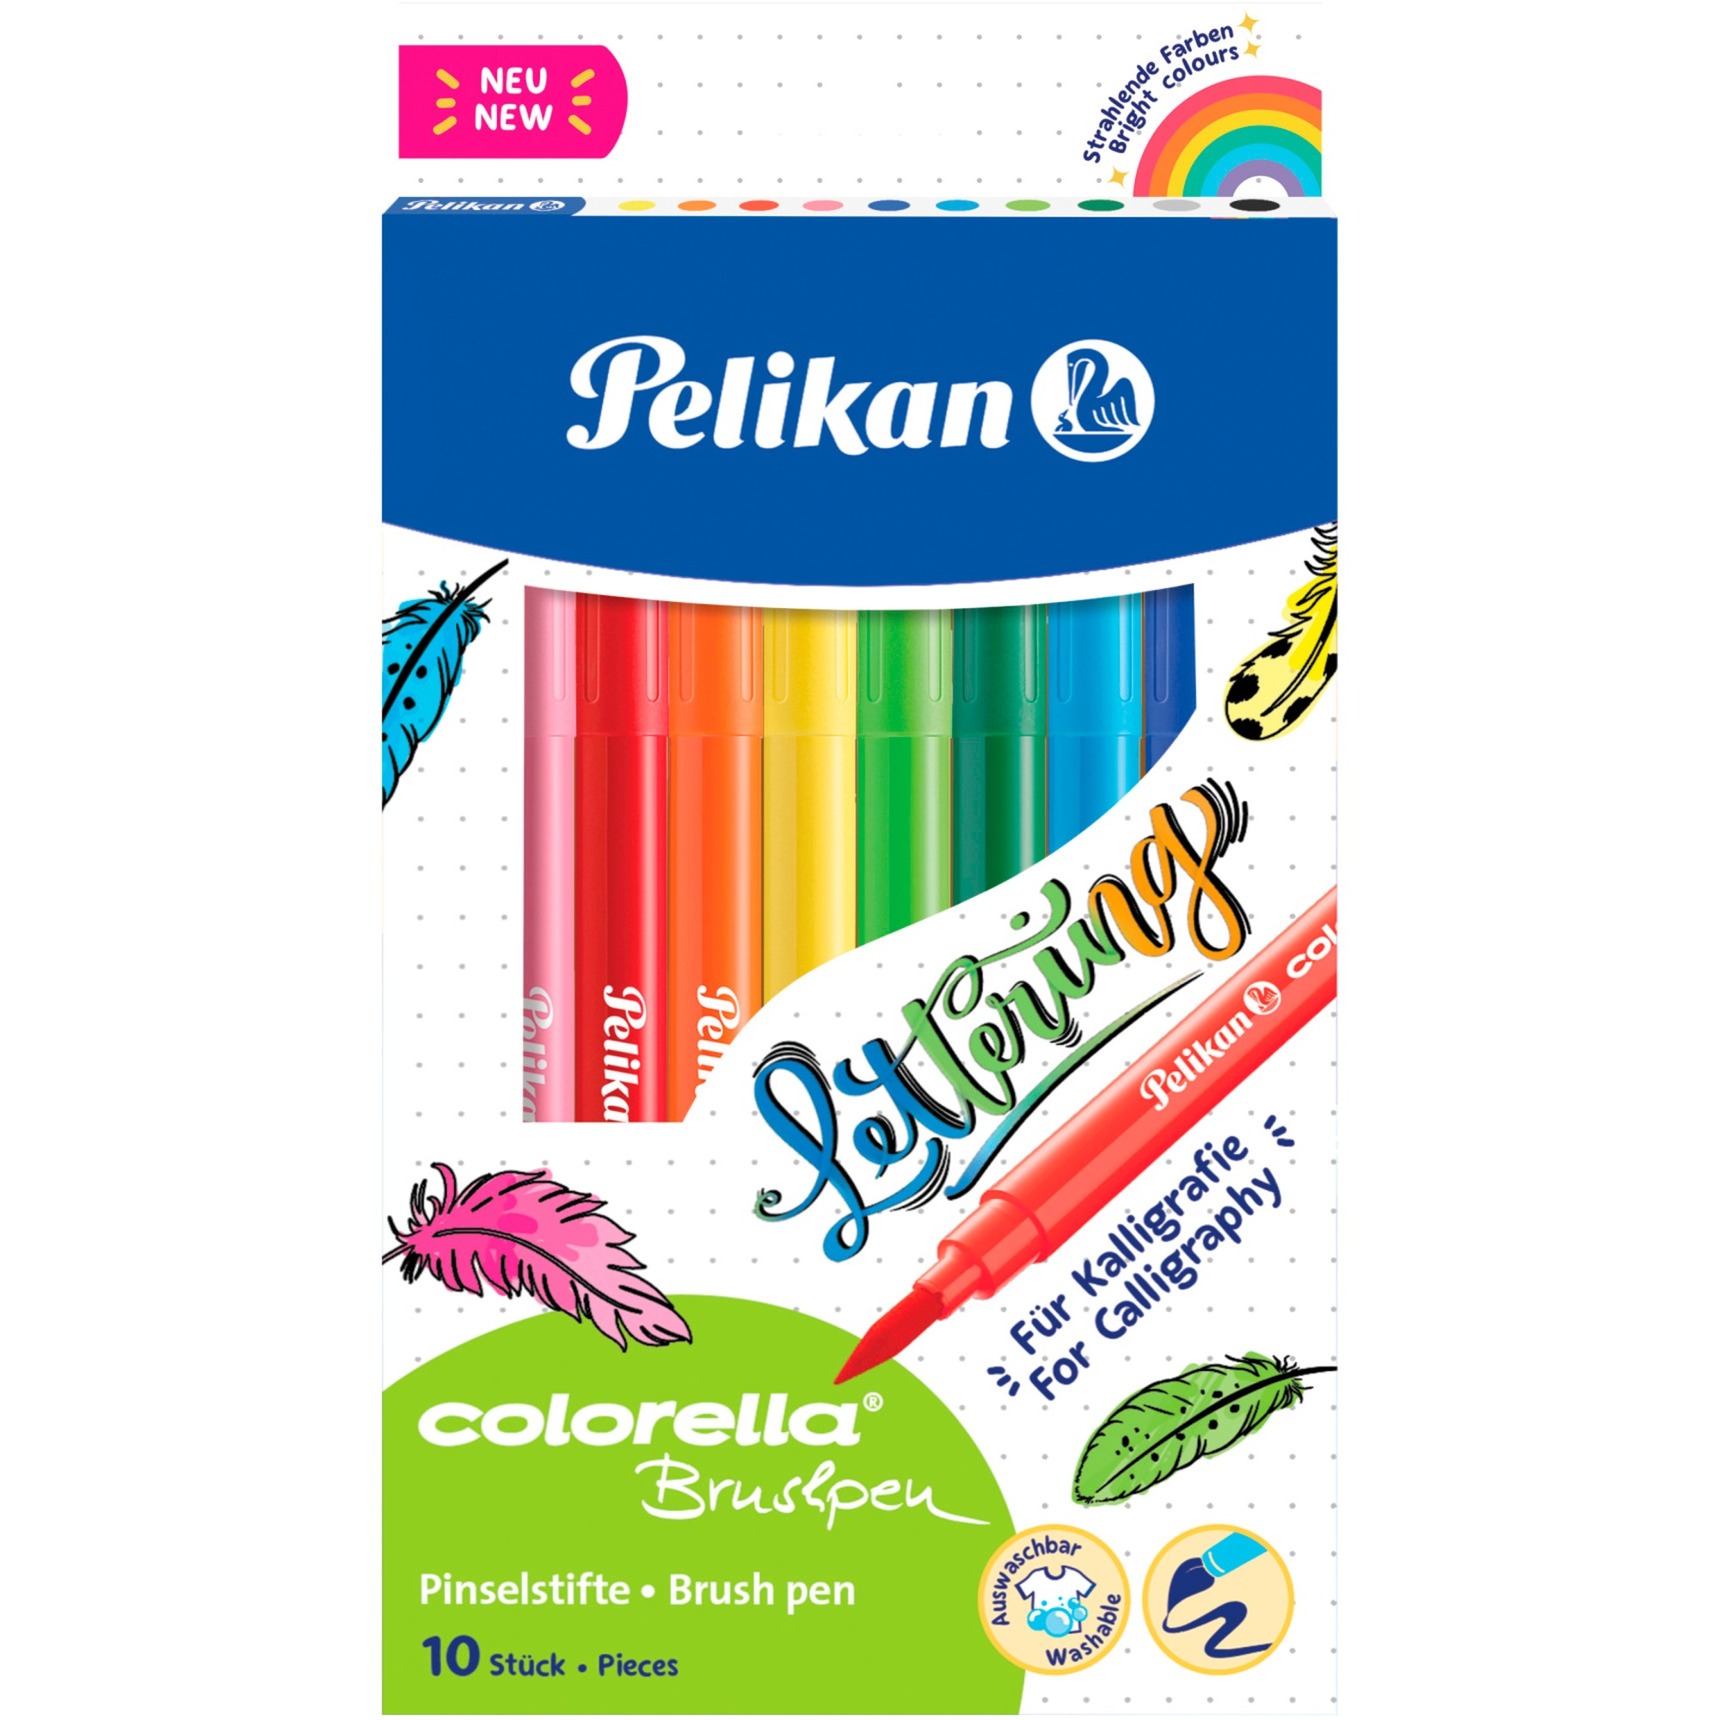 Colorella Pinselstifte von Pelikan